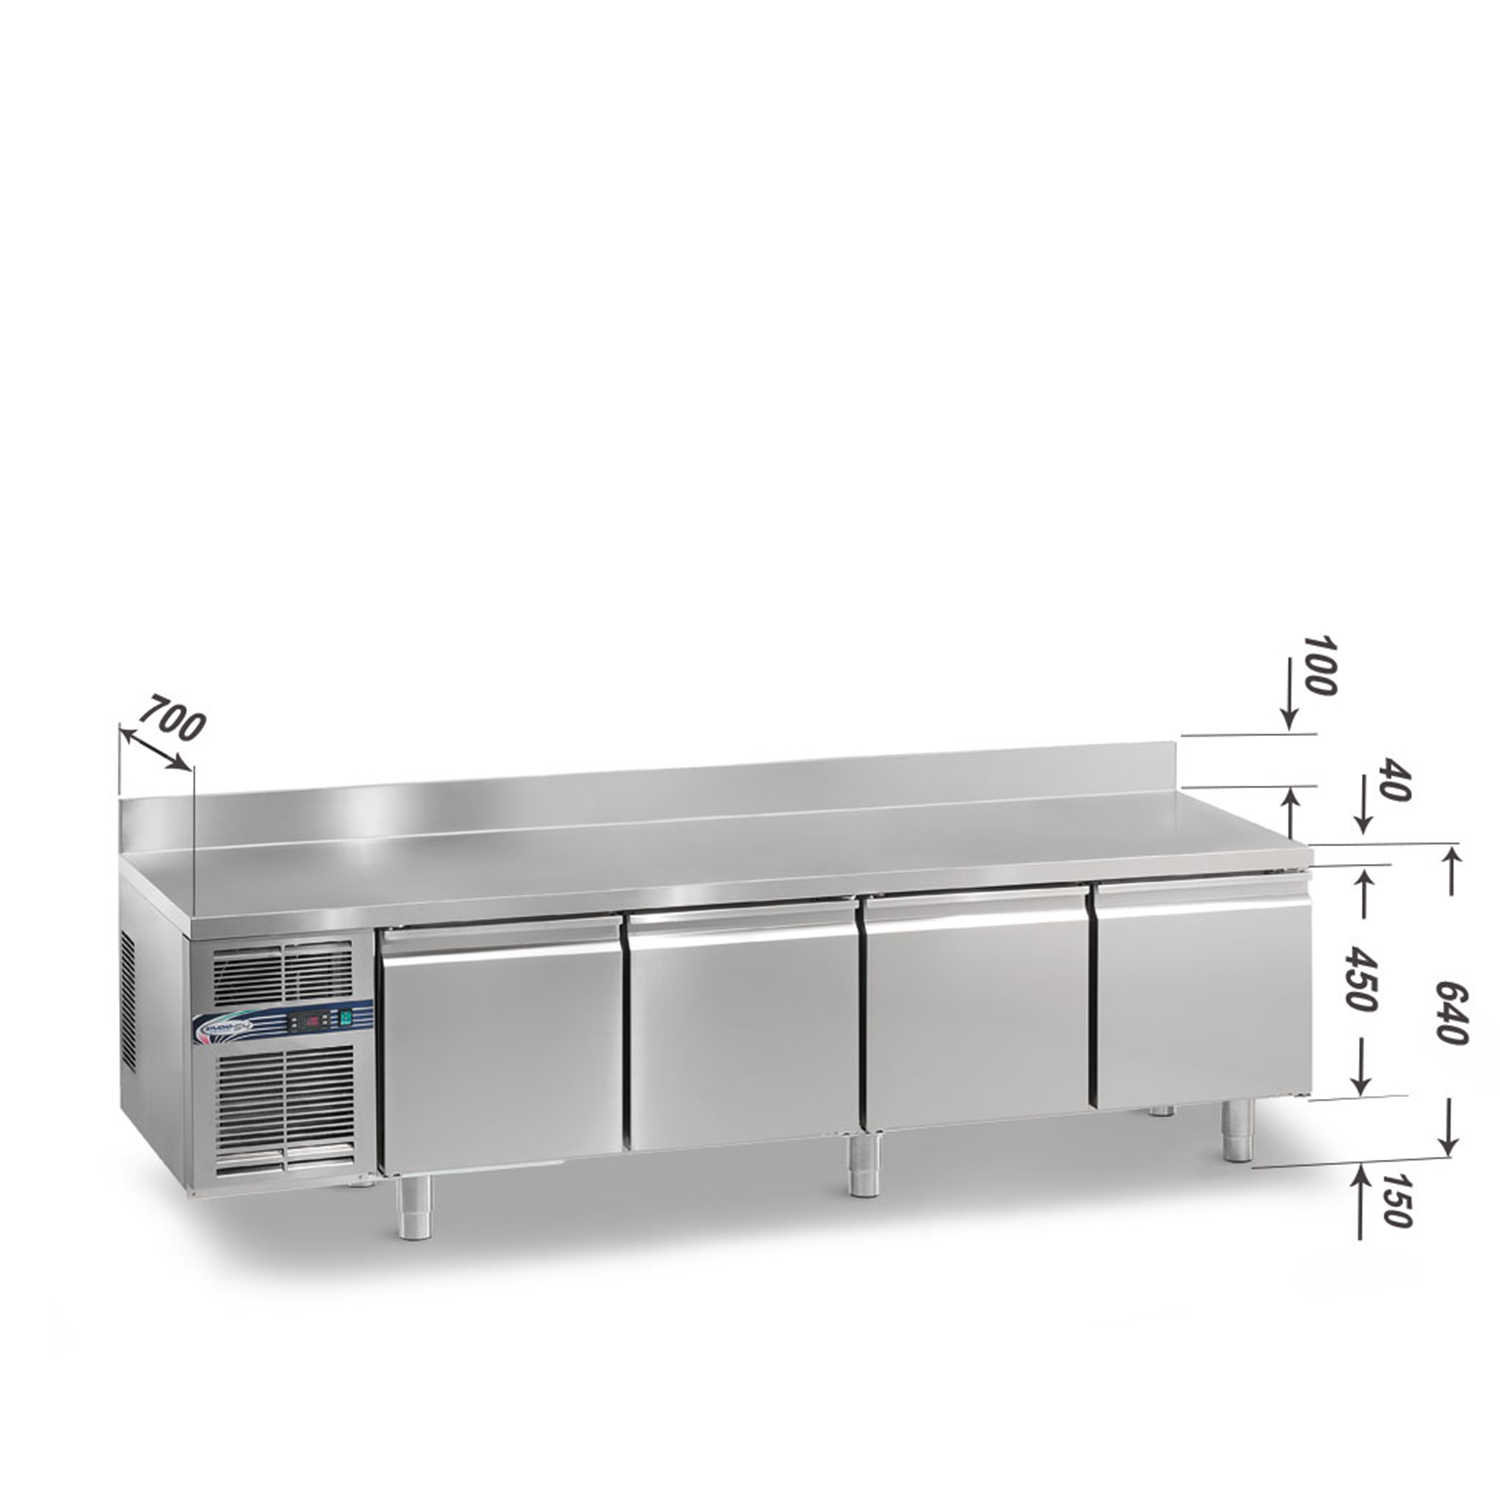 Kühltisch DAIQUIRI Top Line H450 GN 1/1, B 2200  x T 700 x H 640+100 mm, 4 Kühlfächer, Arbeitsplatte mit Aufkantung